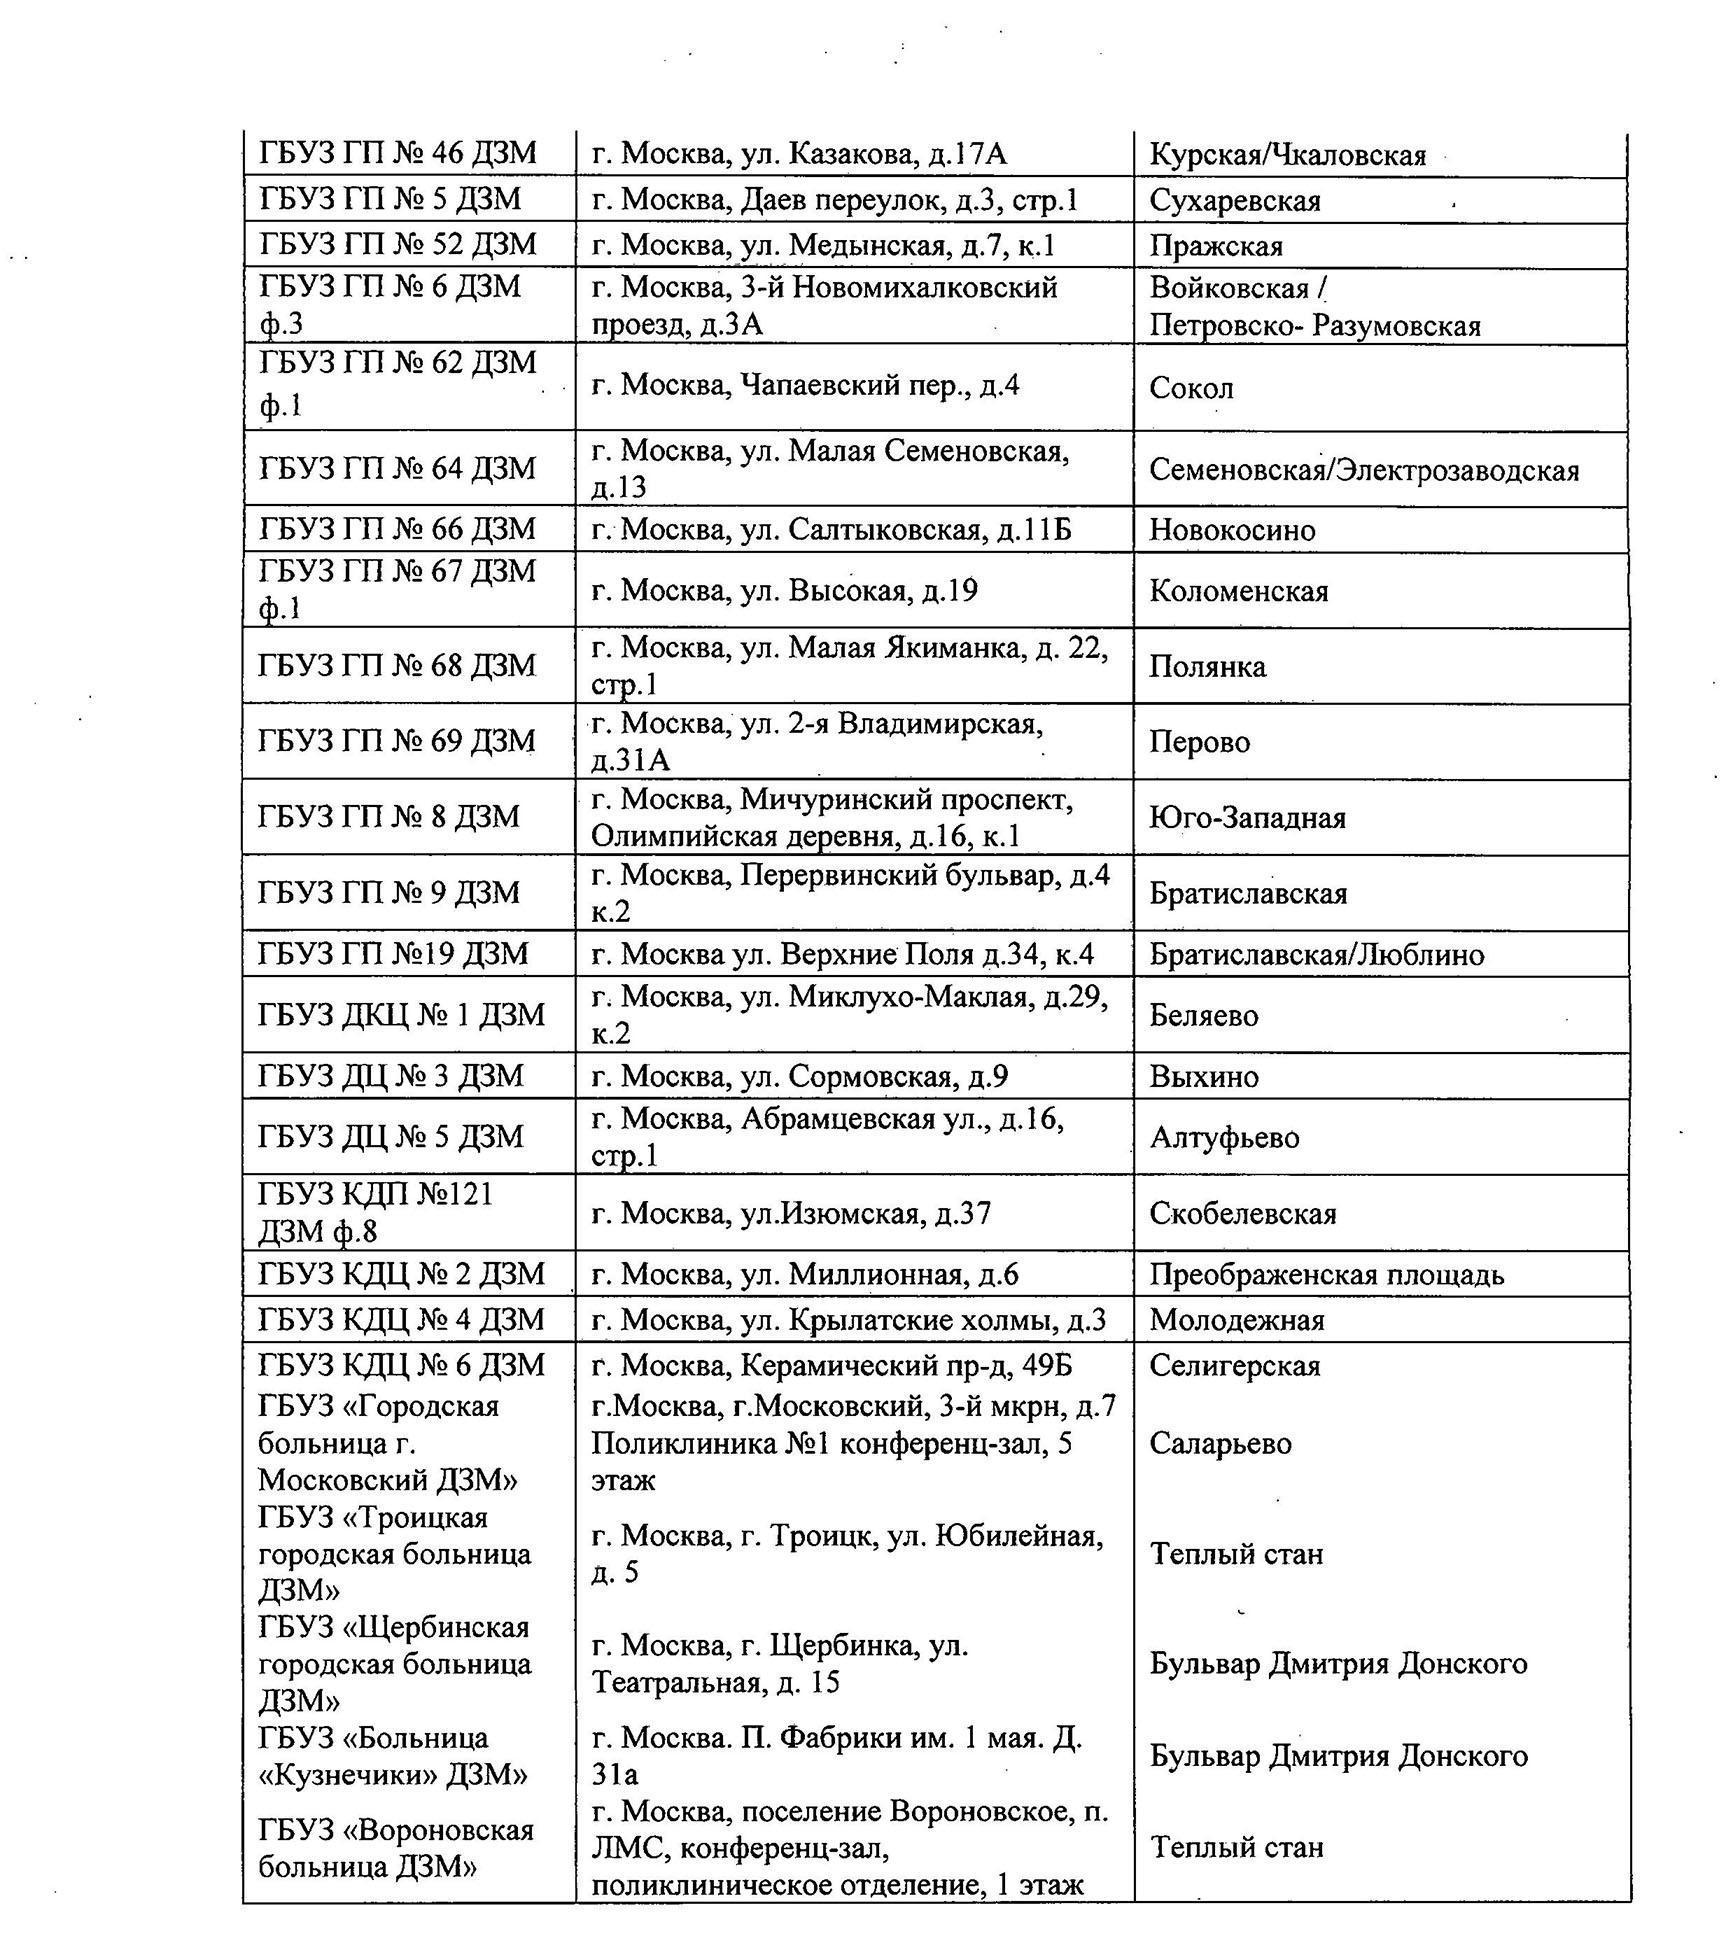 Список учреждений москвы